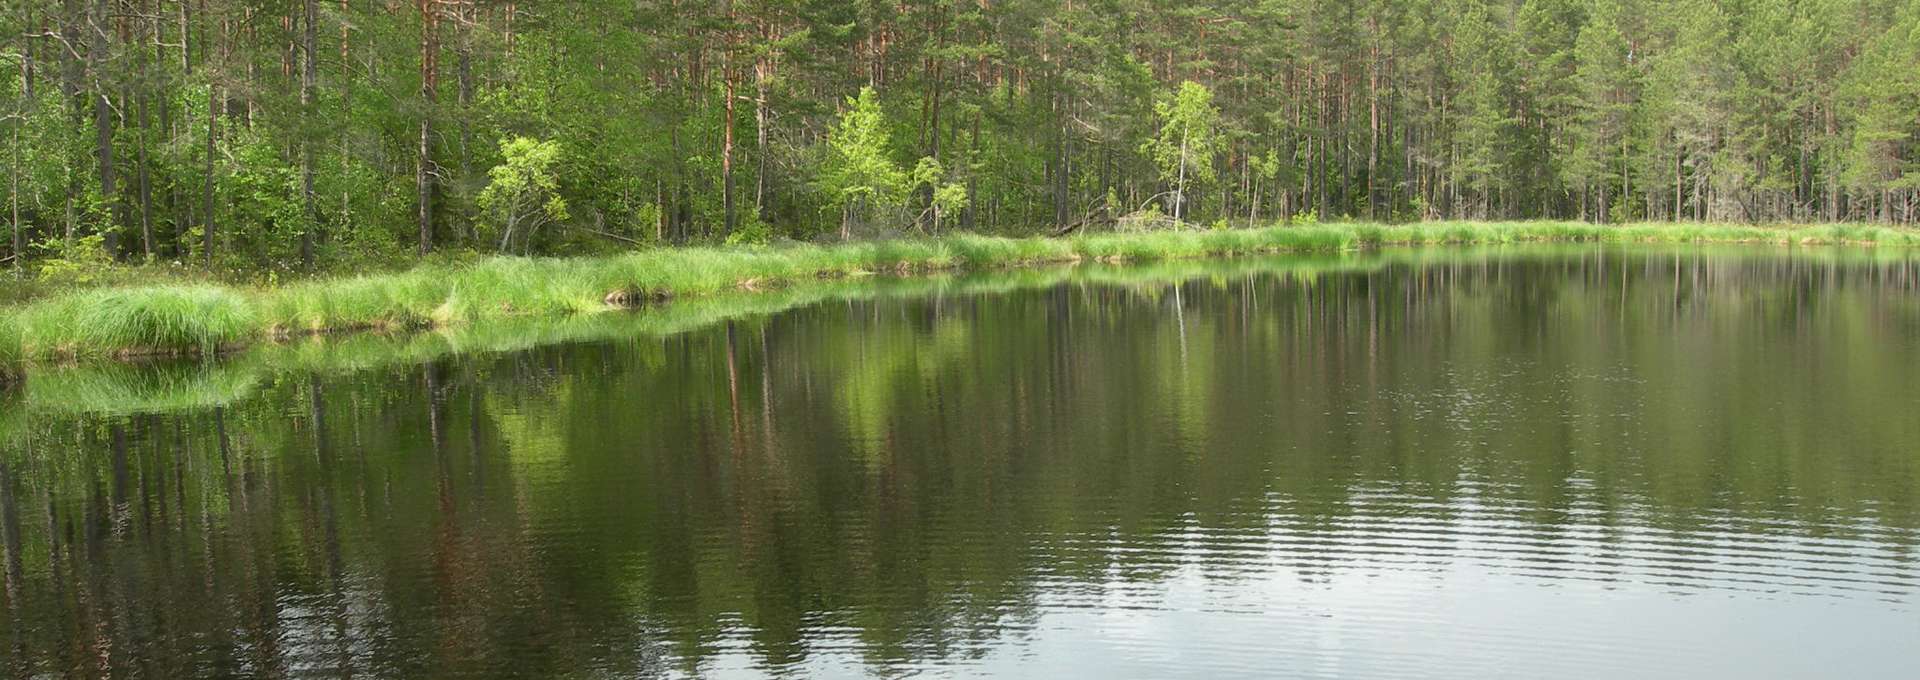 Sjön Skiren med grönskade skog runtom. Solig sommarbild.